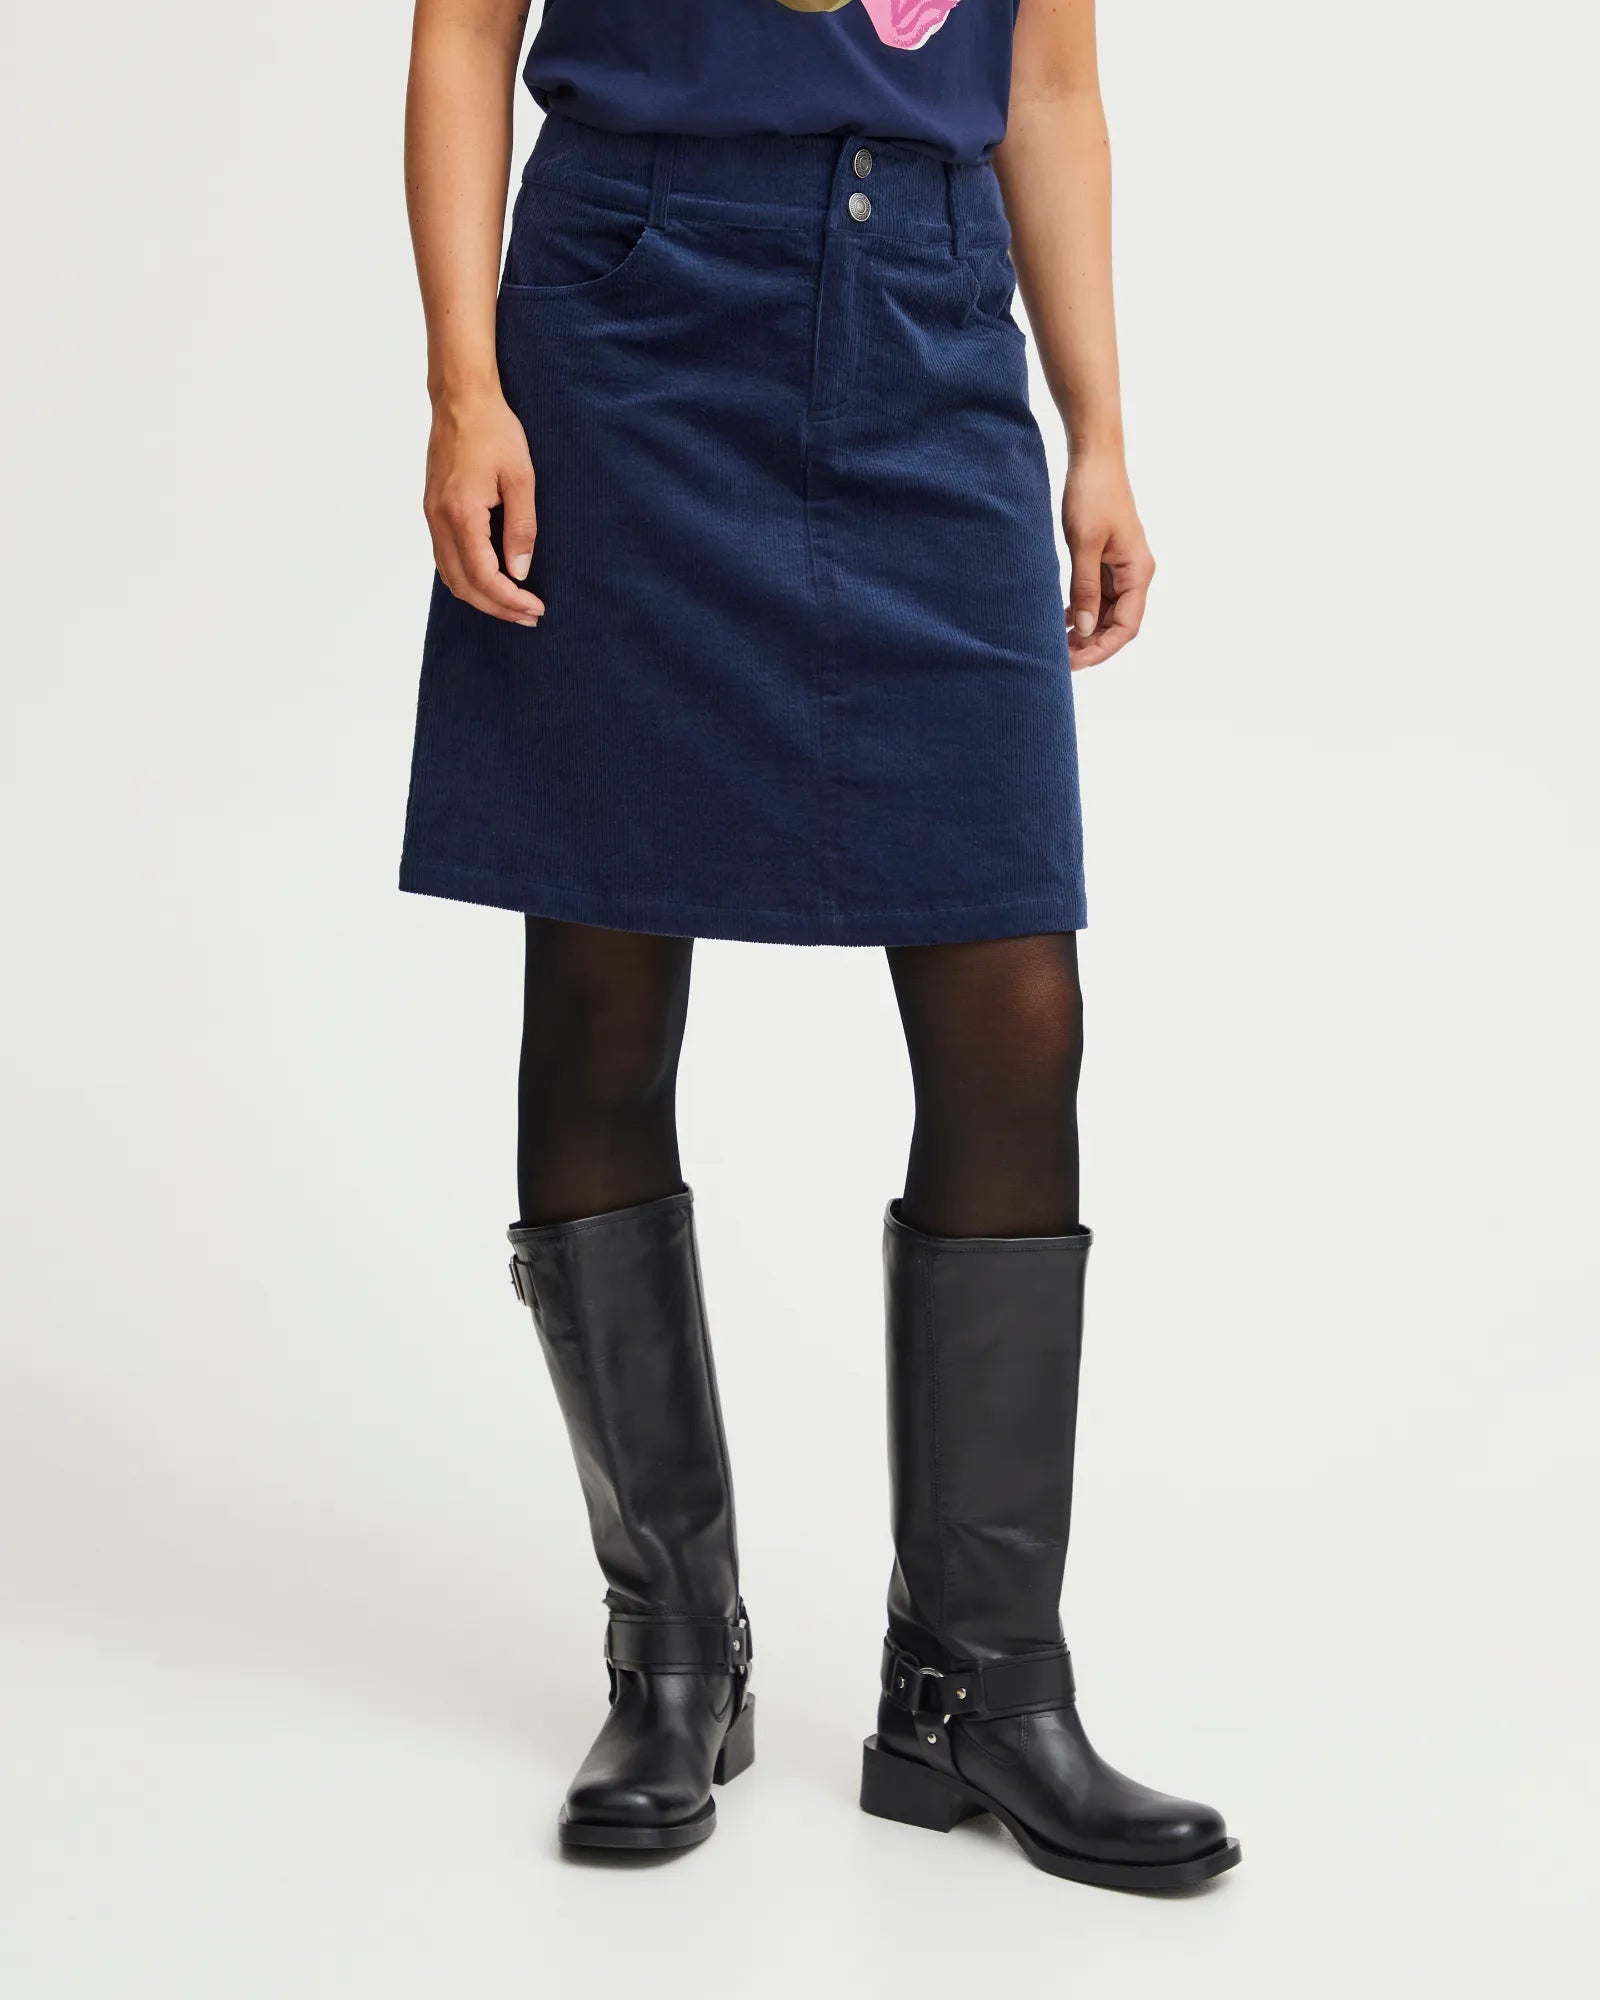 Mita Cord Skirt - Peacoat